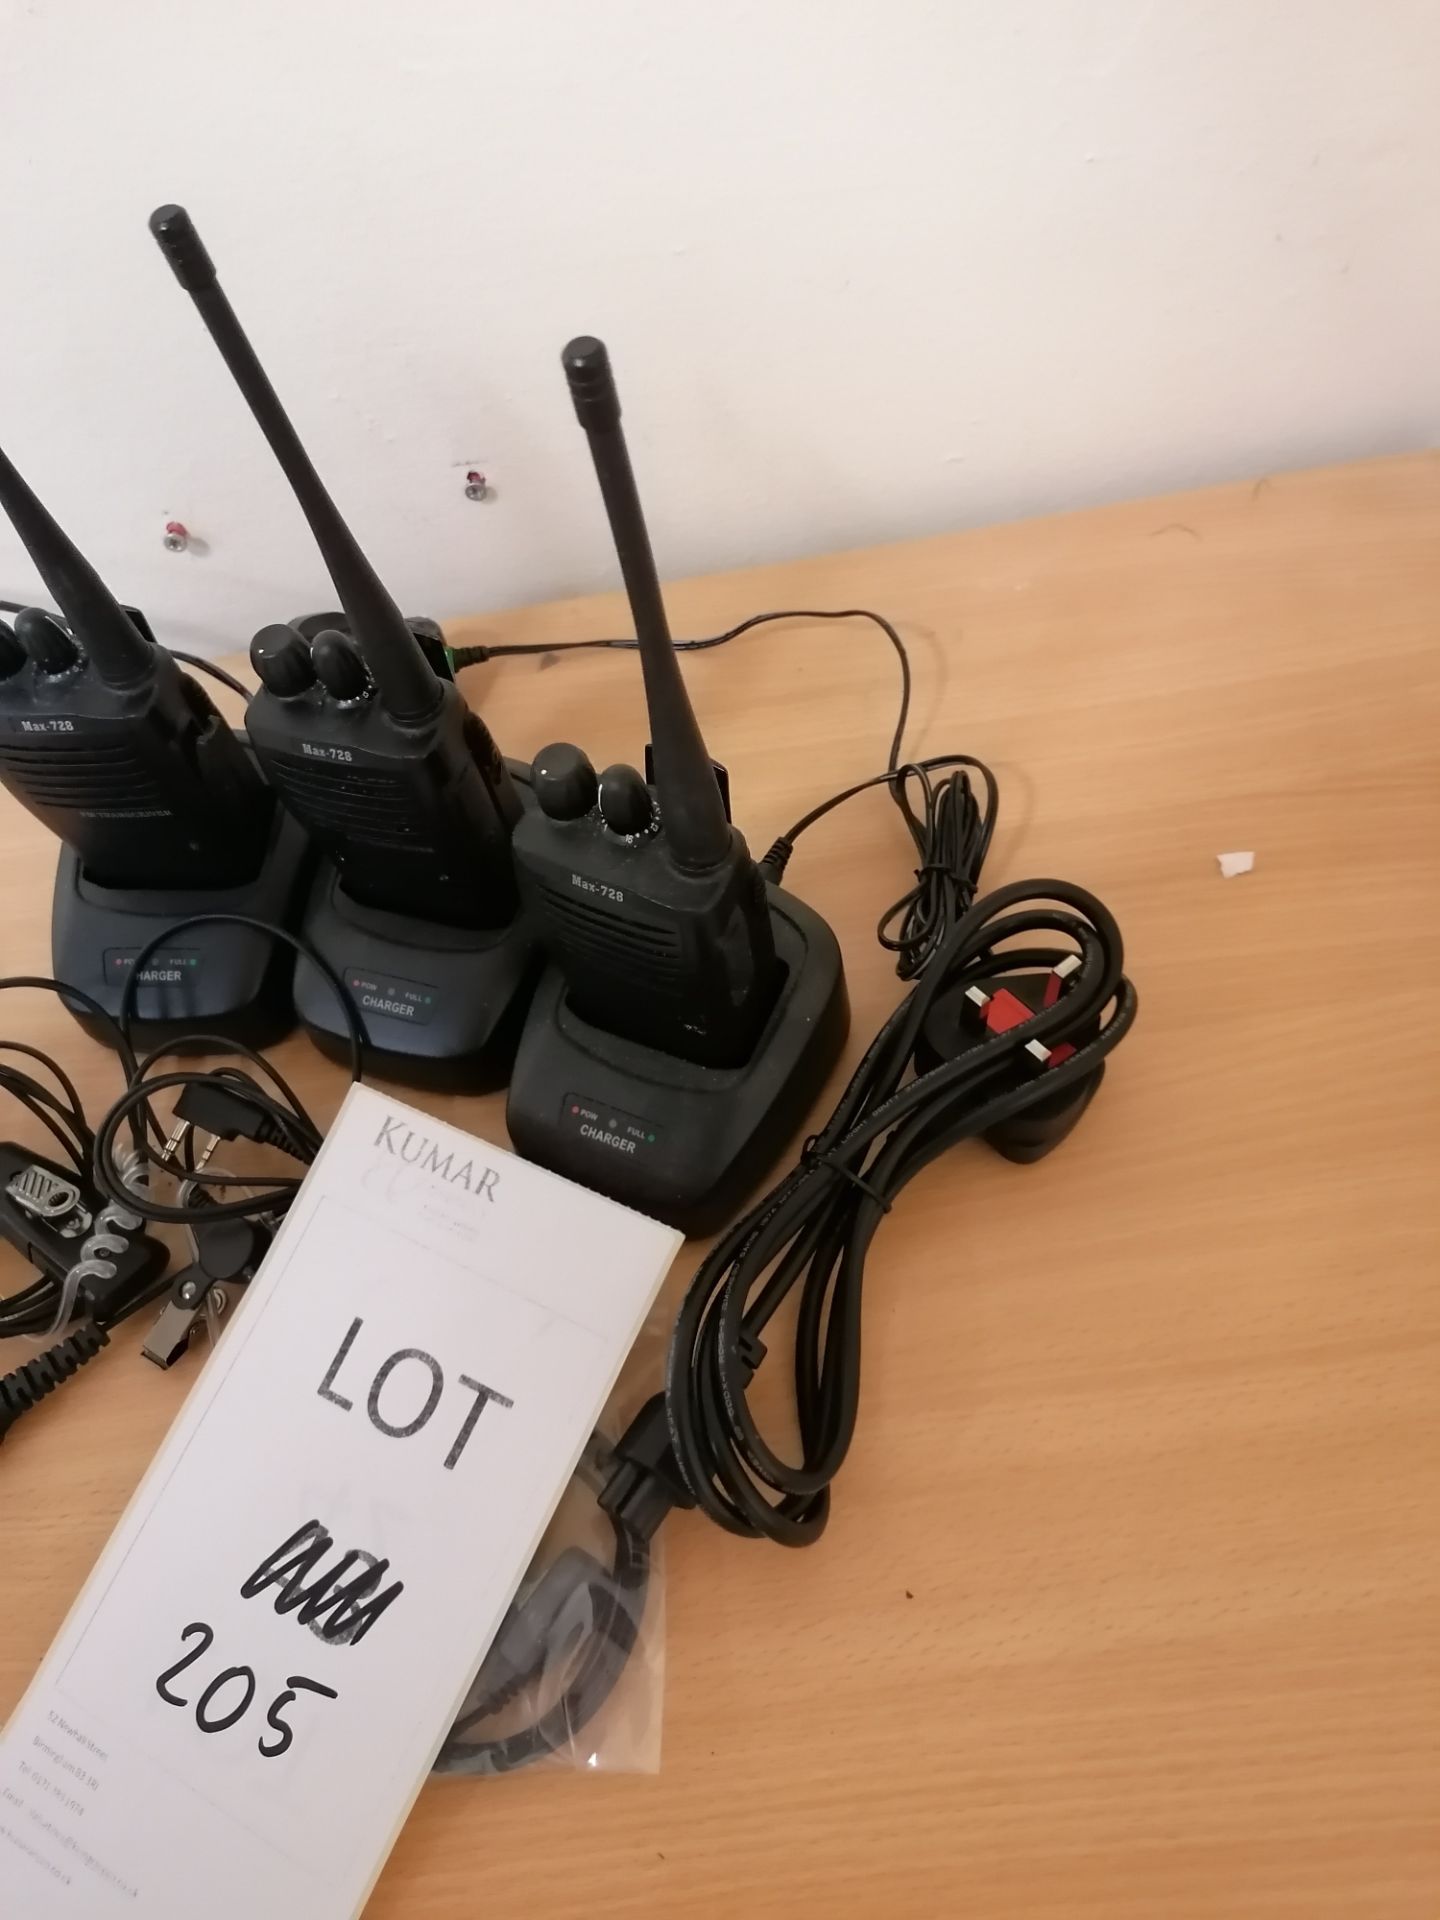 3 x max 728 fm 2 way walkie talkies - Image 3 of 3